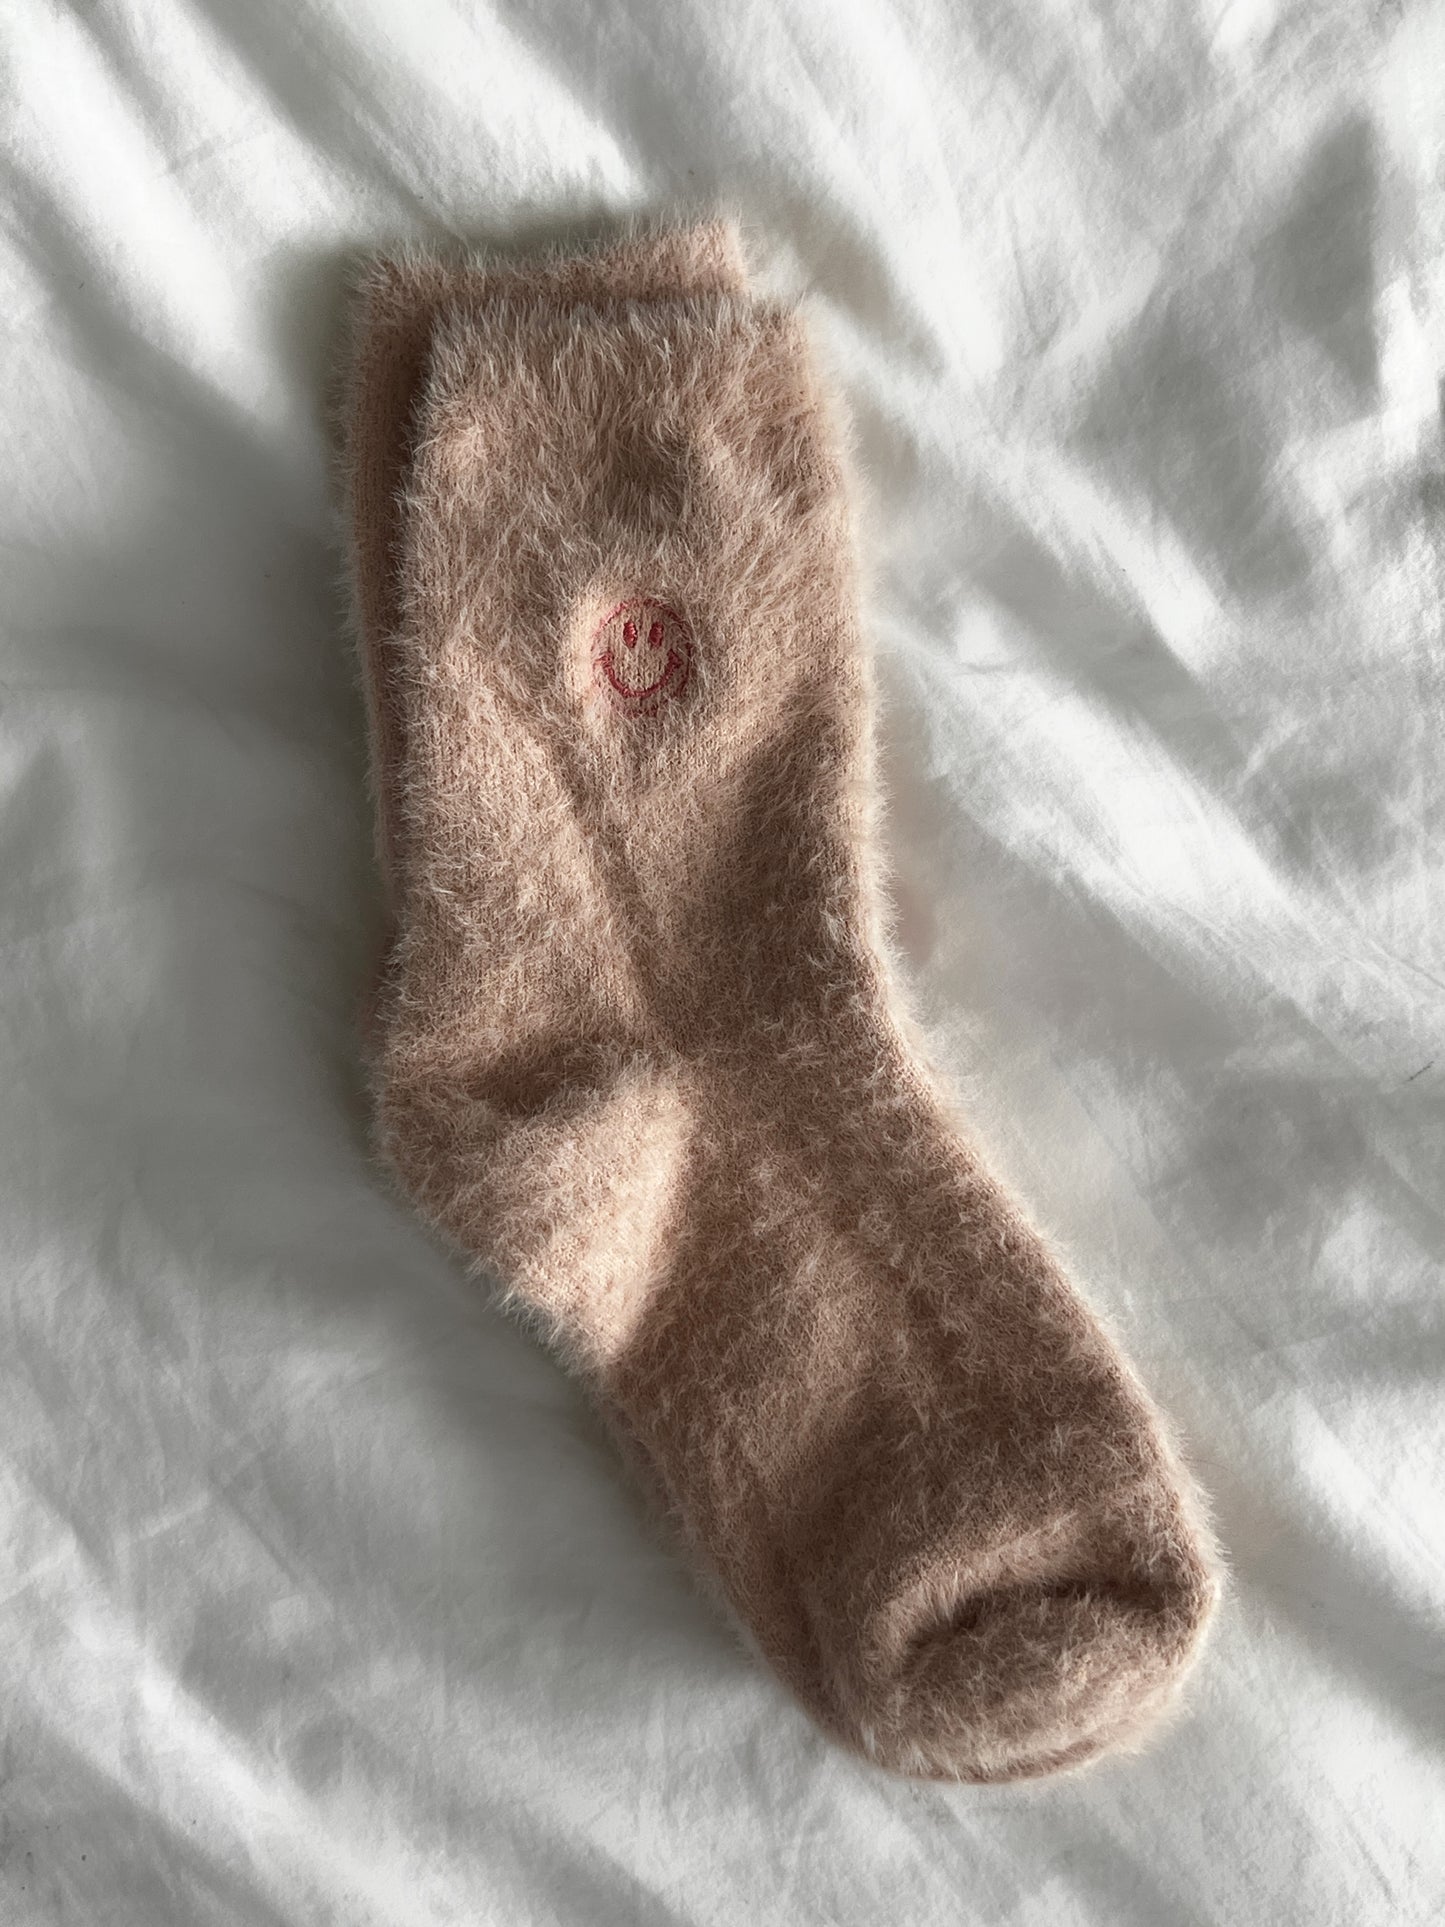 Fuzzy socks 🙂